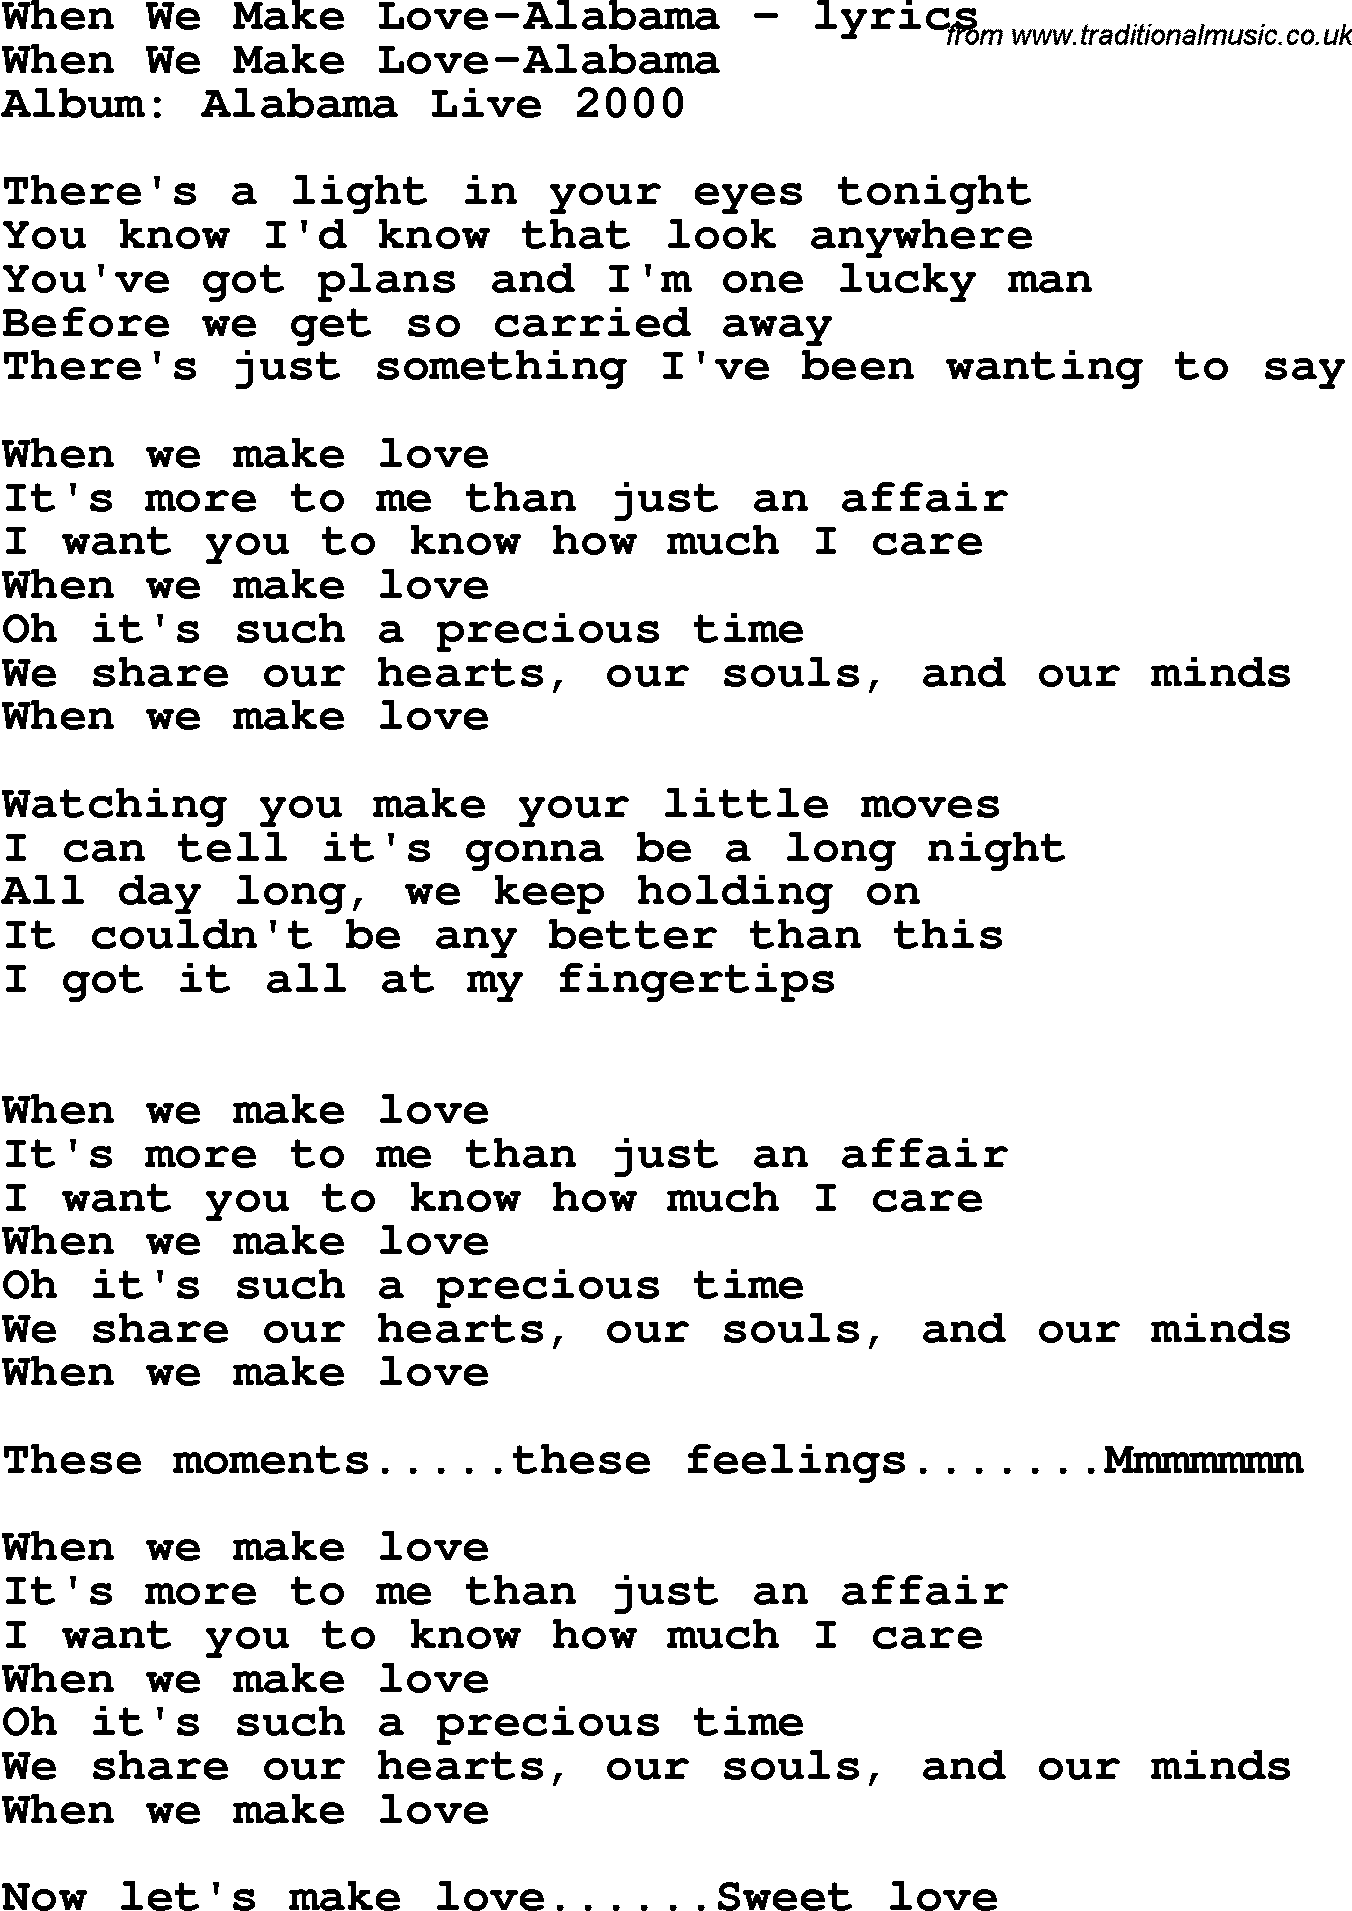 Love Song Lyrics for: When We Make Love-Alabama